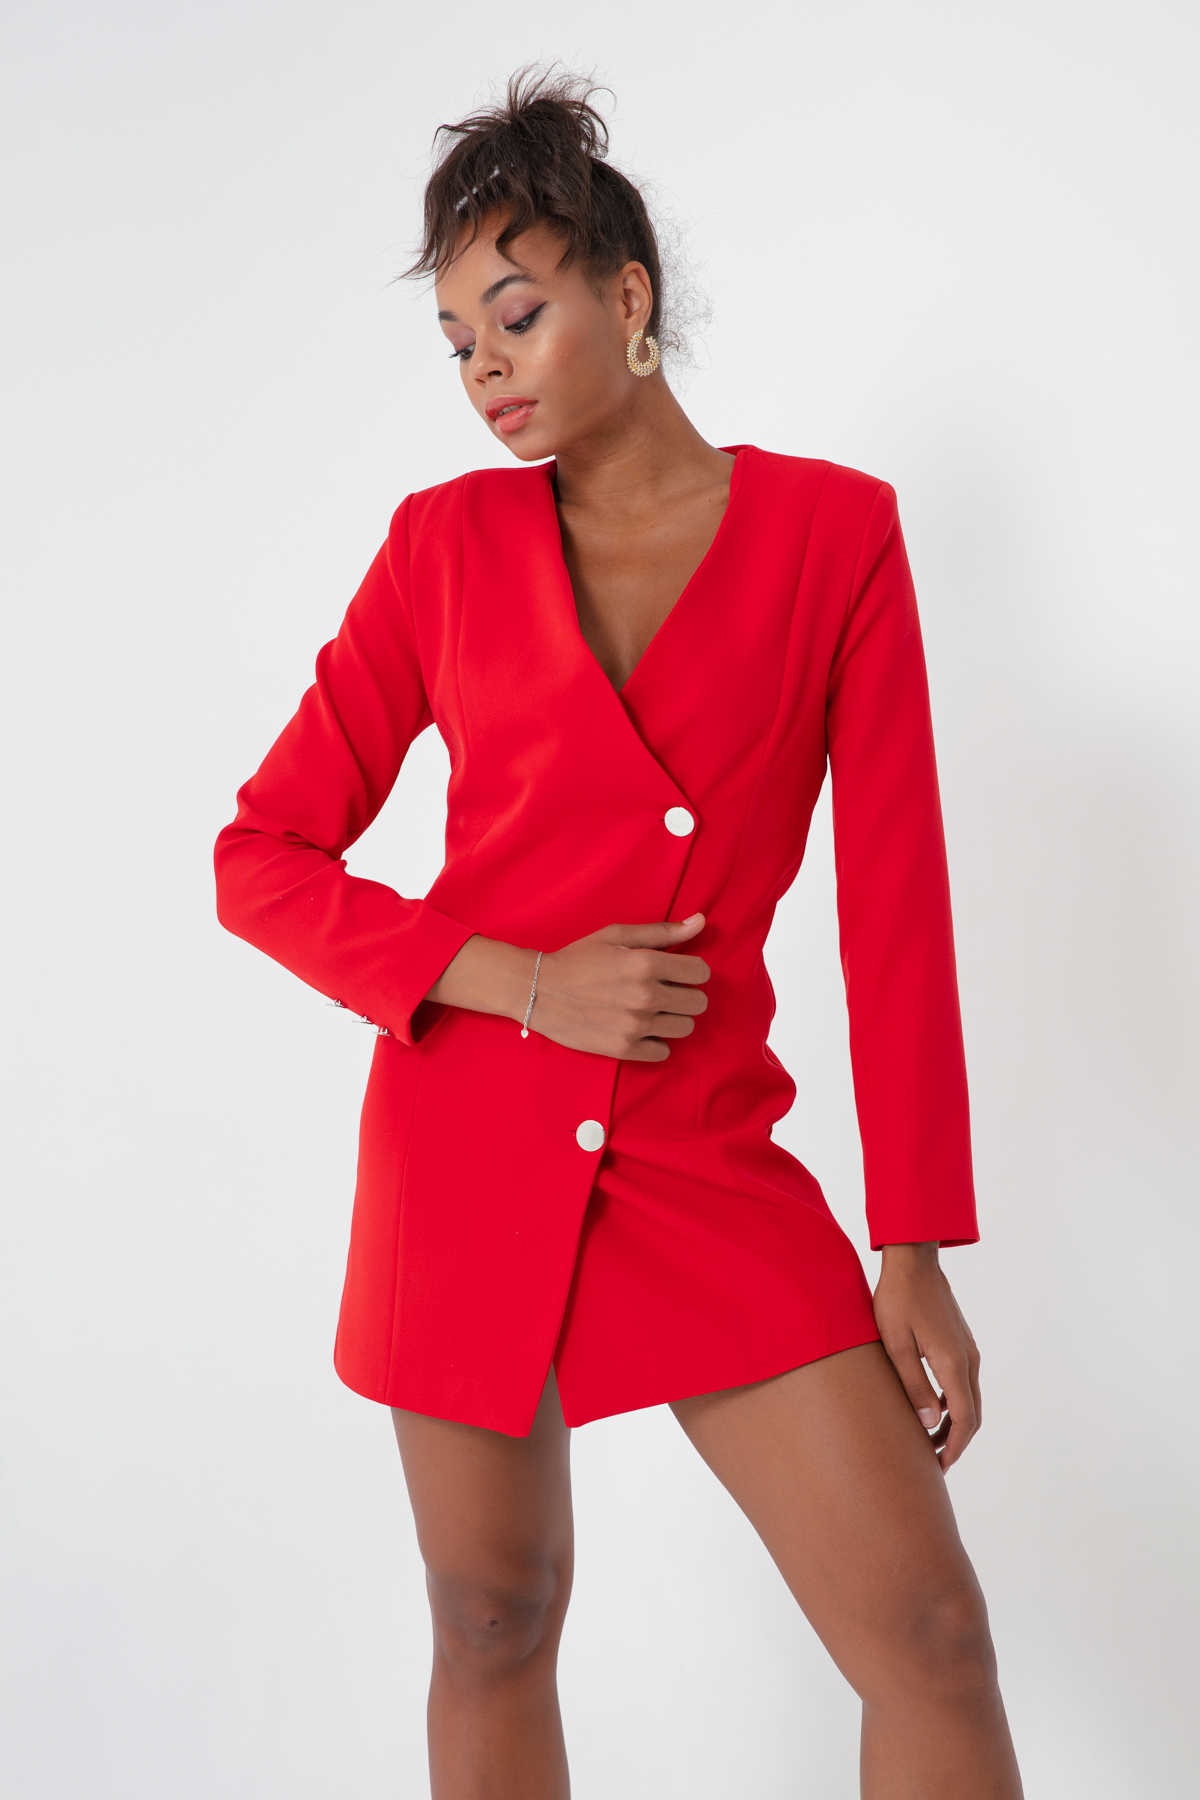 Women's Red Jacket Dress